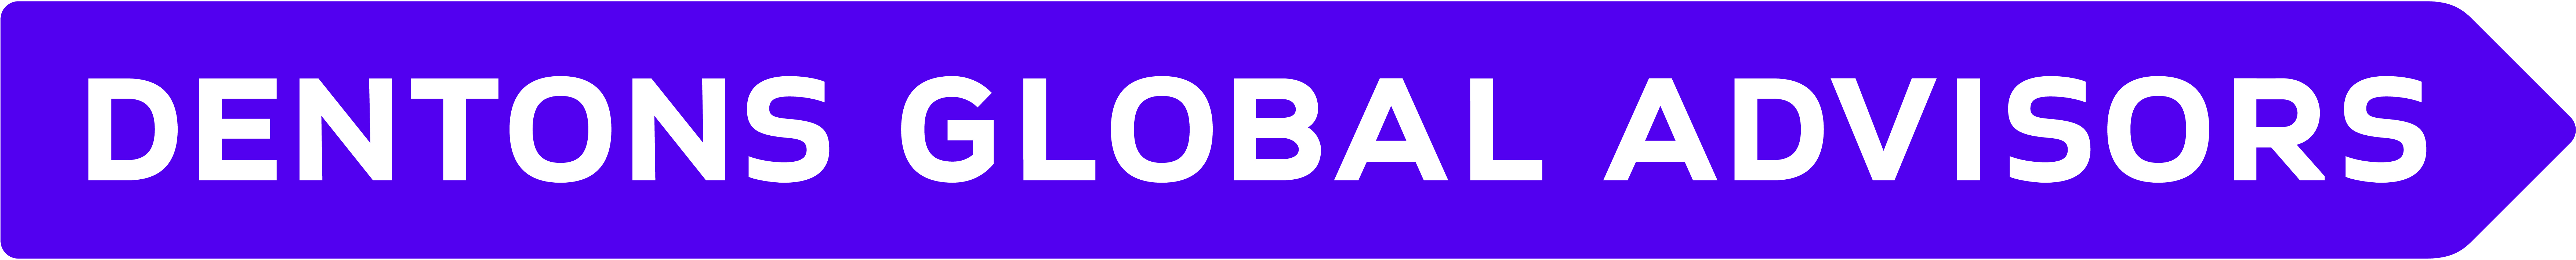 dentons global advisors logo